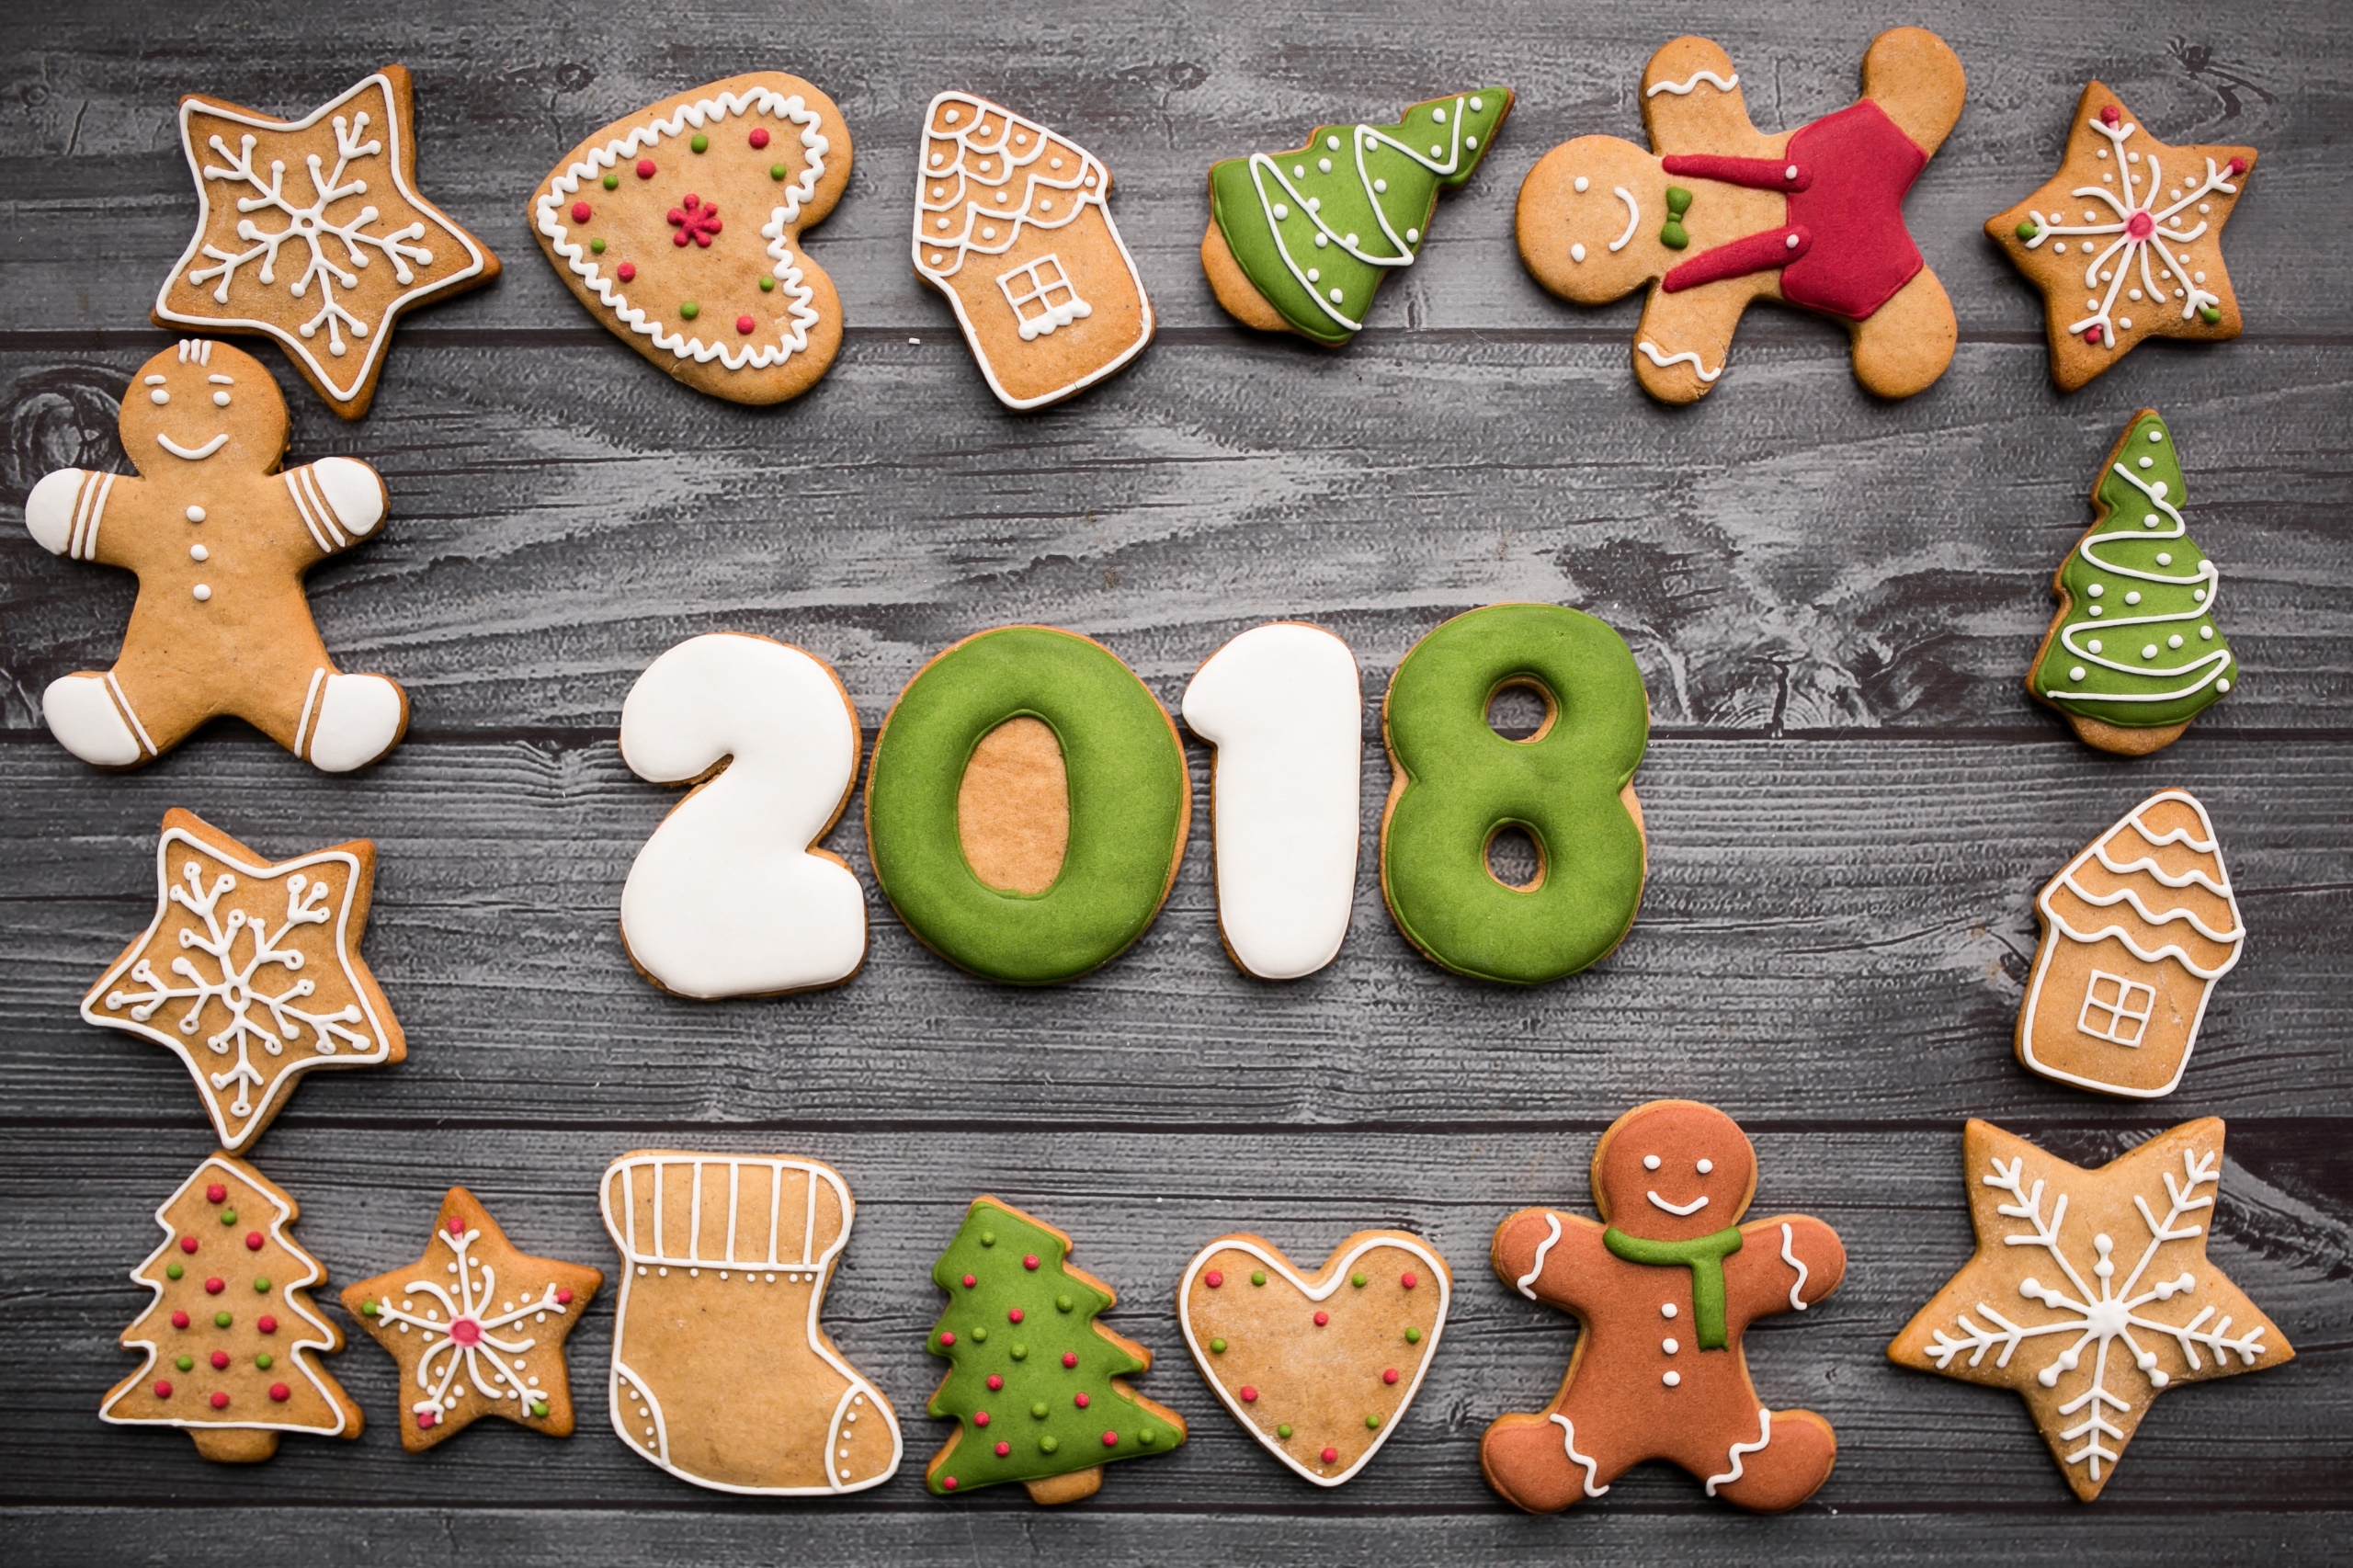 General 2560x1706 2018 (year) food sweets cookies Christmas digital art gingerbread house wood gingerbread man socks gingerbread trees